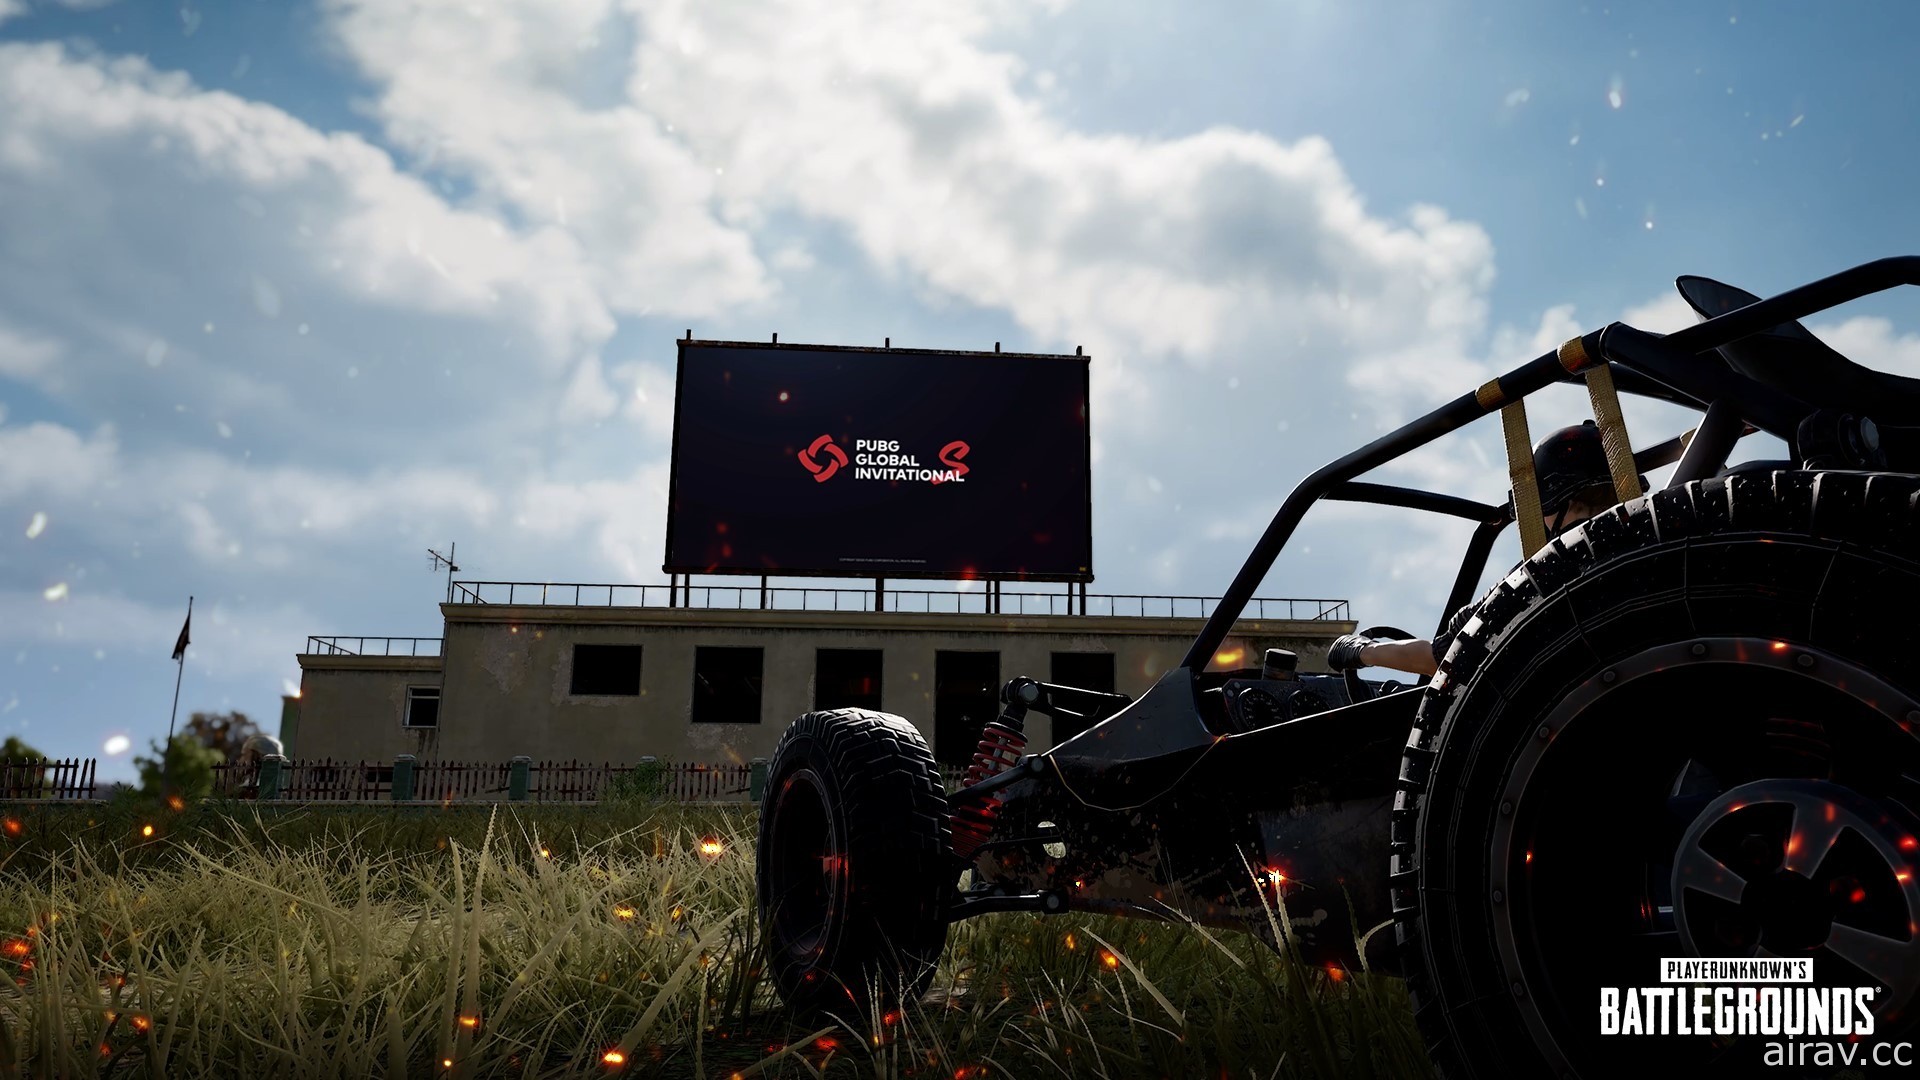 《絕地求生》10.2 更新加入越野摩托車空中特技 於遊戲內地圖建置直播電視牆